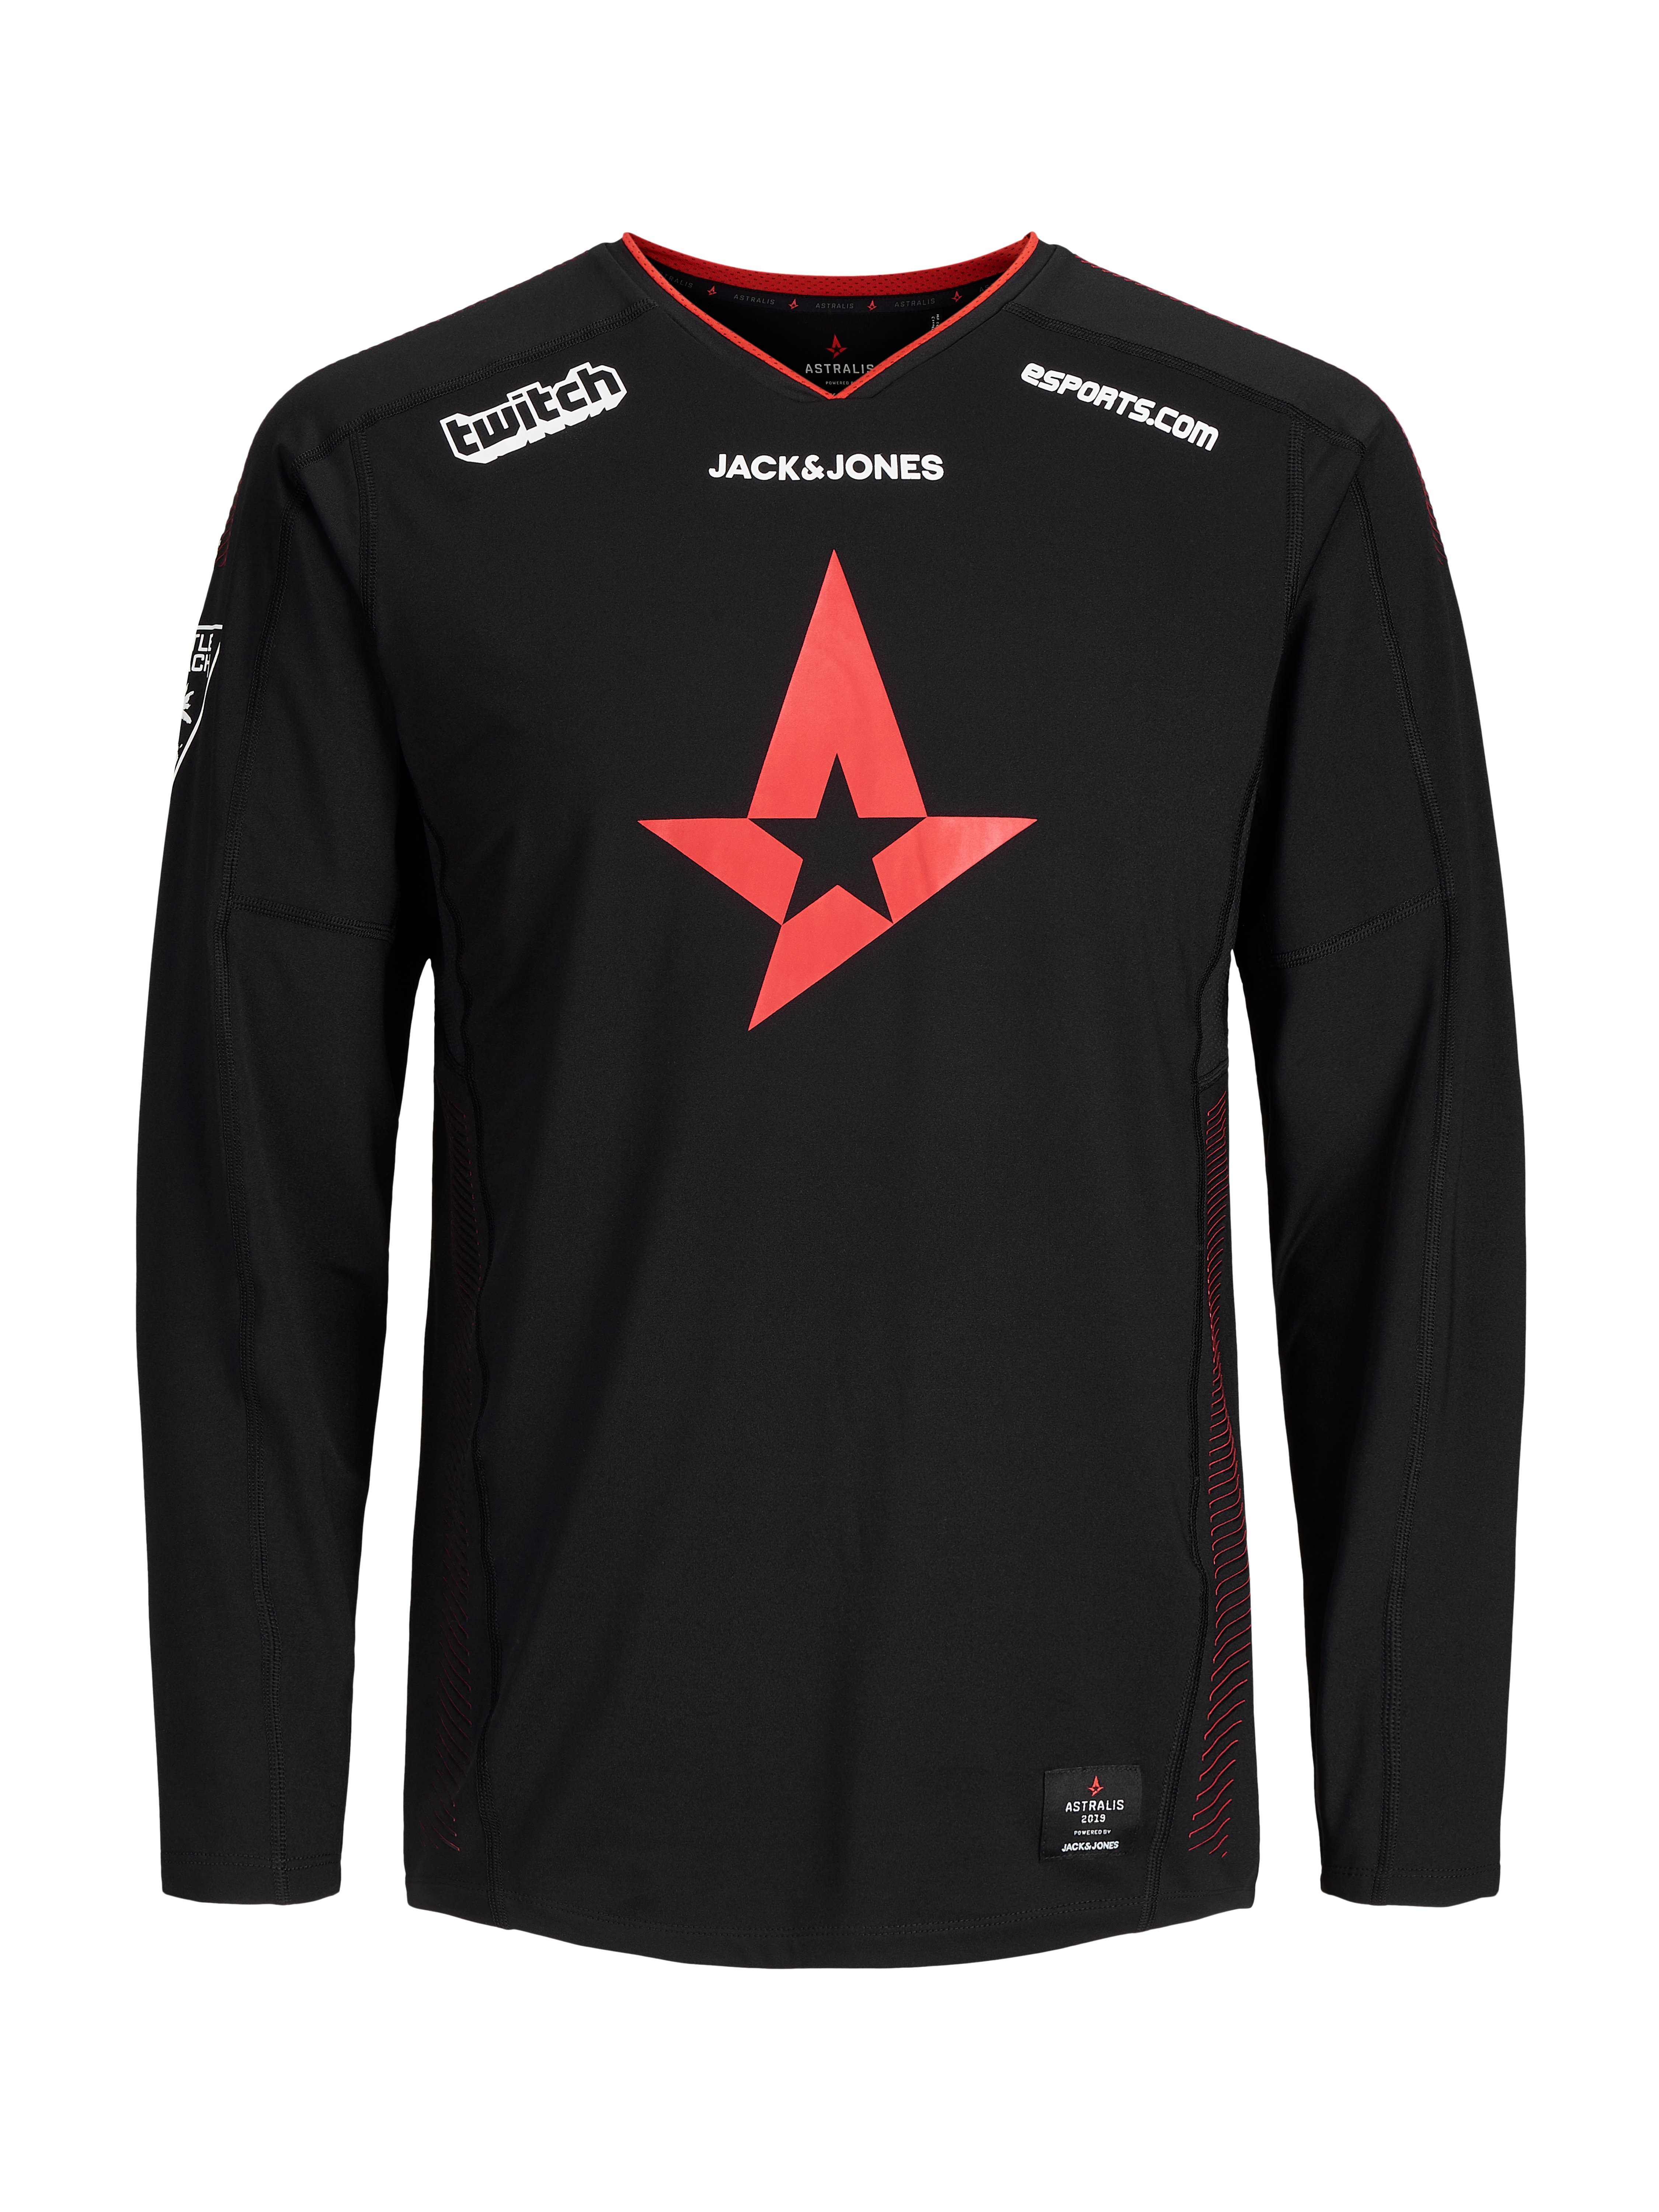 Osta Astralis Merc Official T-Shirt LS 2019 - XXXL netistä 